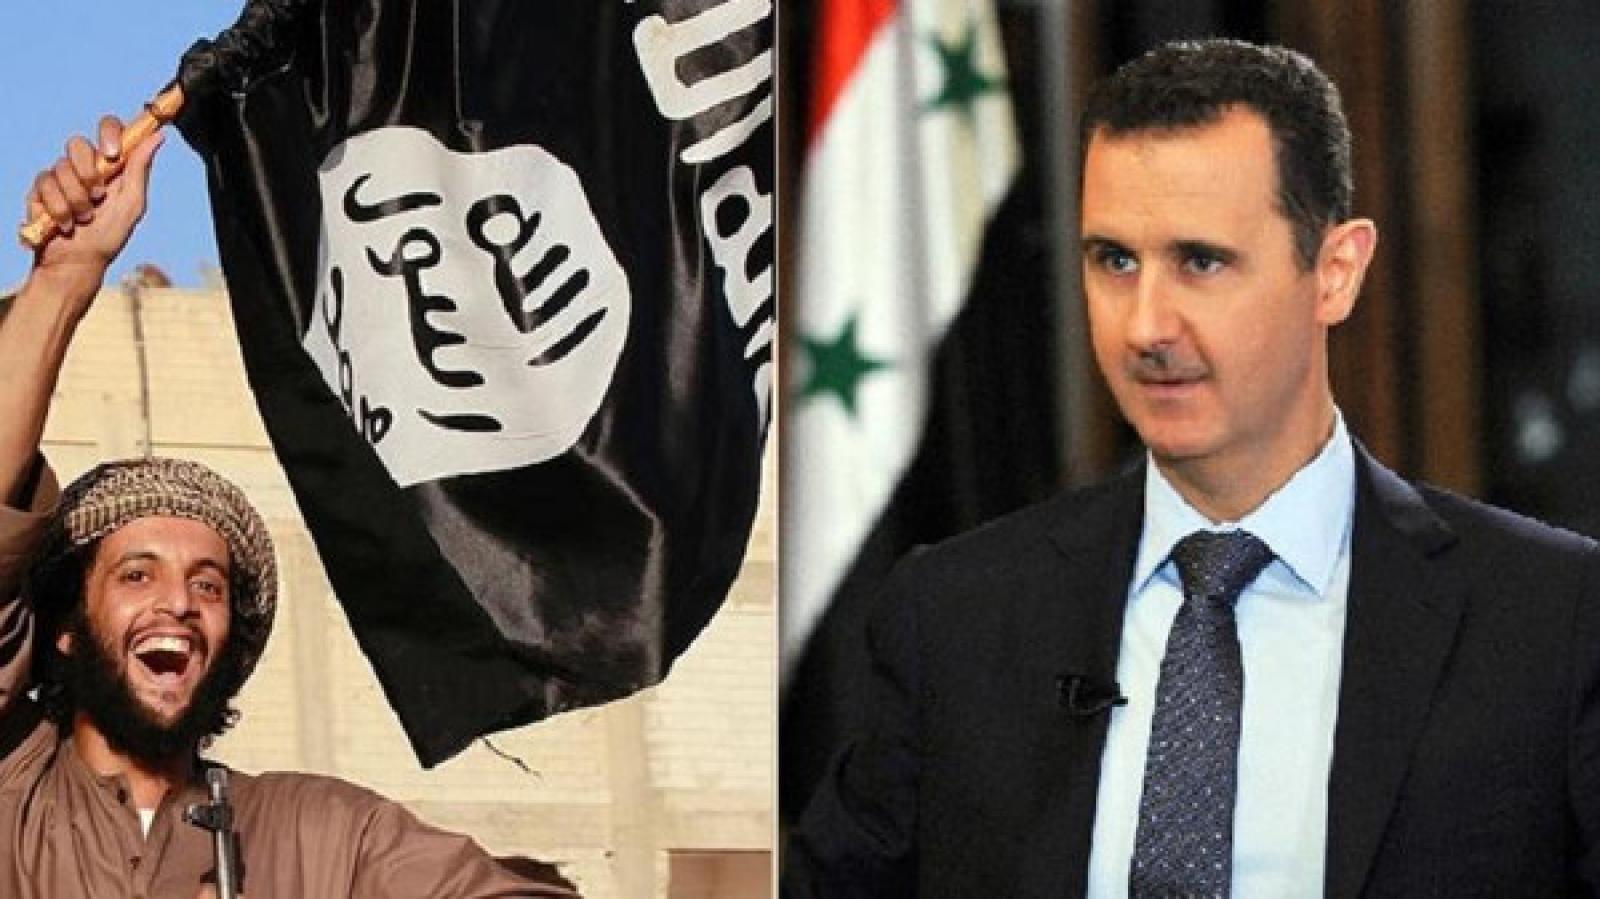 Асад сотрудничает с ИГИЛ и уводит боевиков из под удара в Сирии, попутно торгуя с главарями нефтью - СМИ